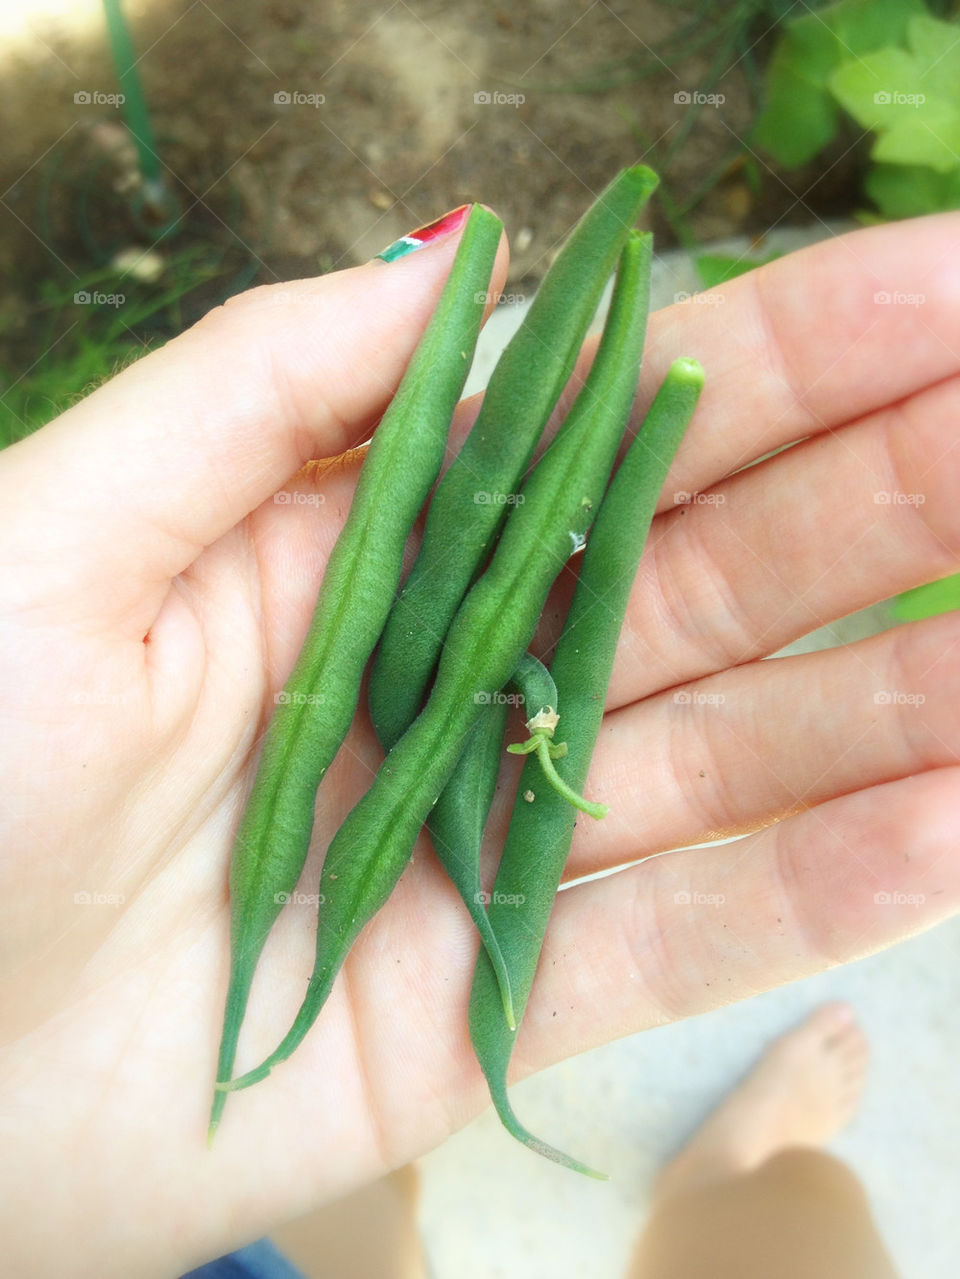 Green Beans From The Garden